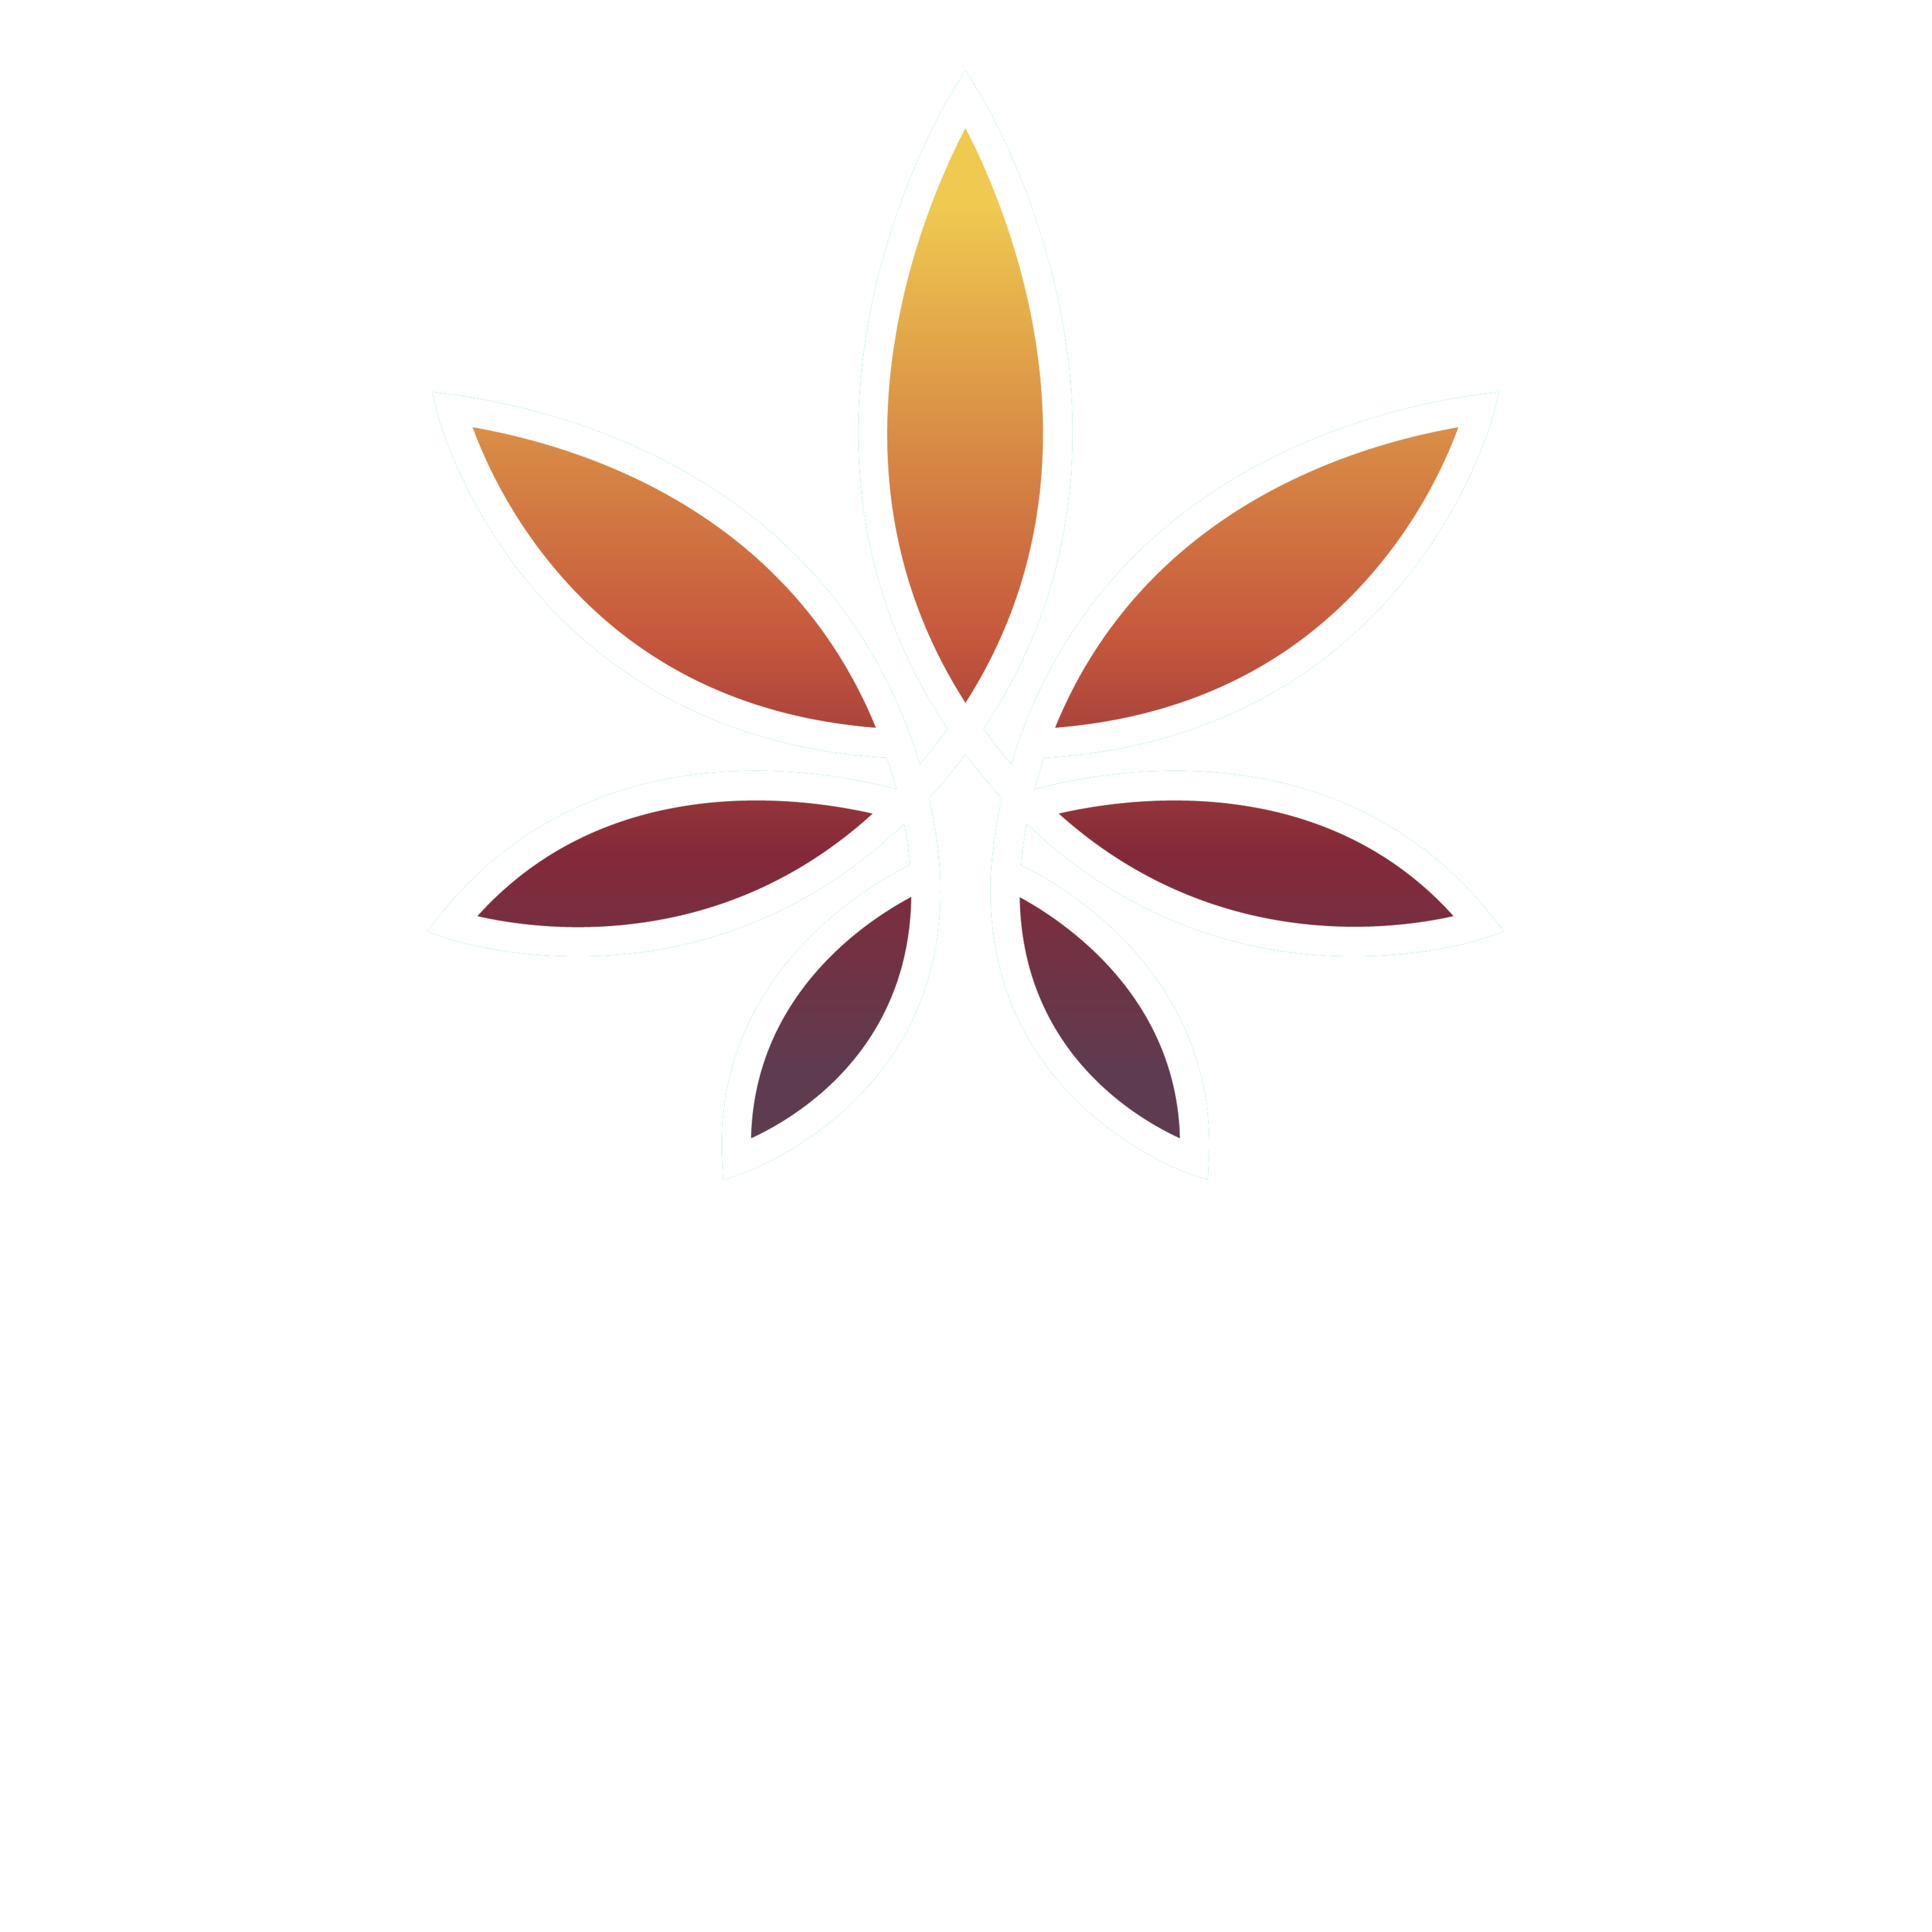 METRC Training, METRC consultants, metrc compliance training, metrc certified, compliance consultant, oklahoma metrc, metrc oklahoma, point-of-sale